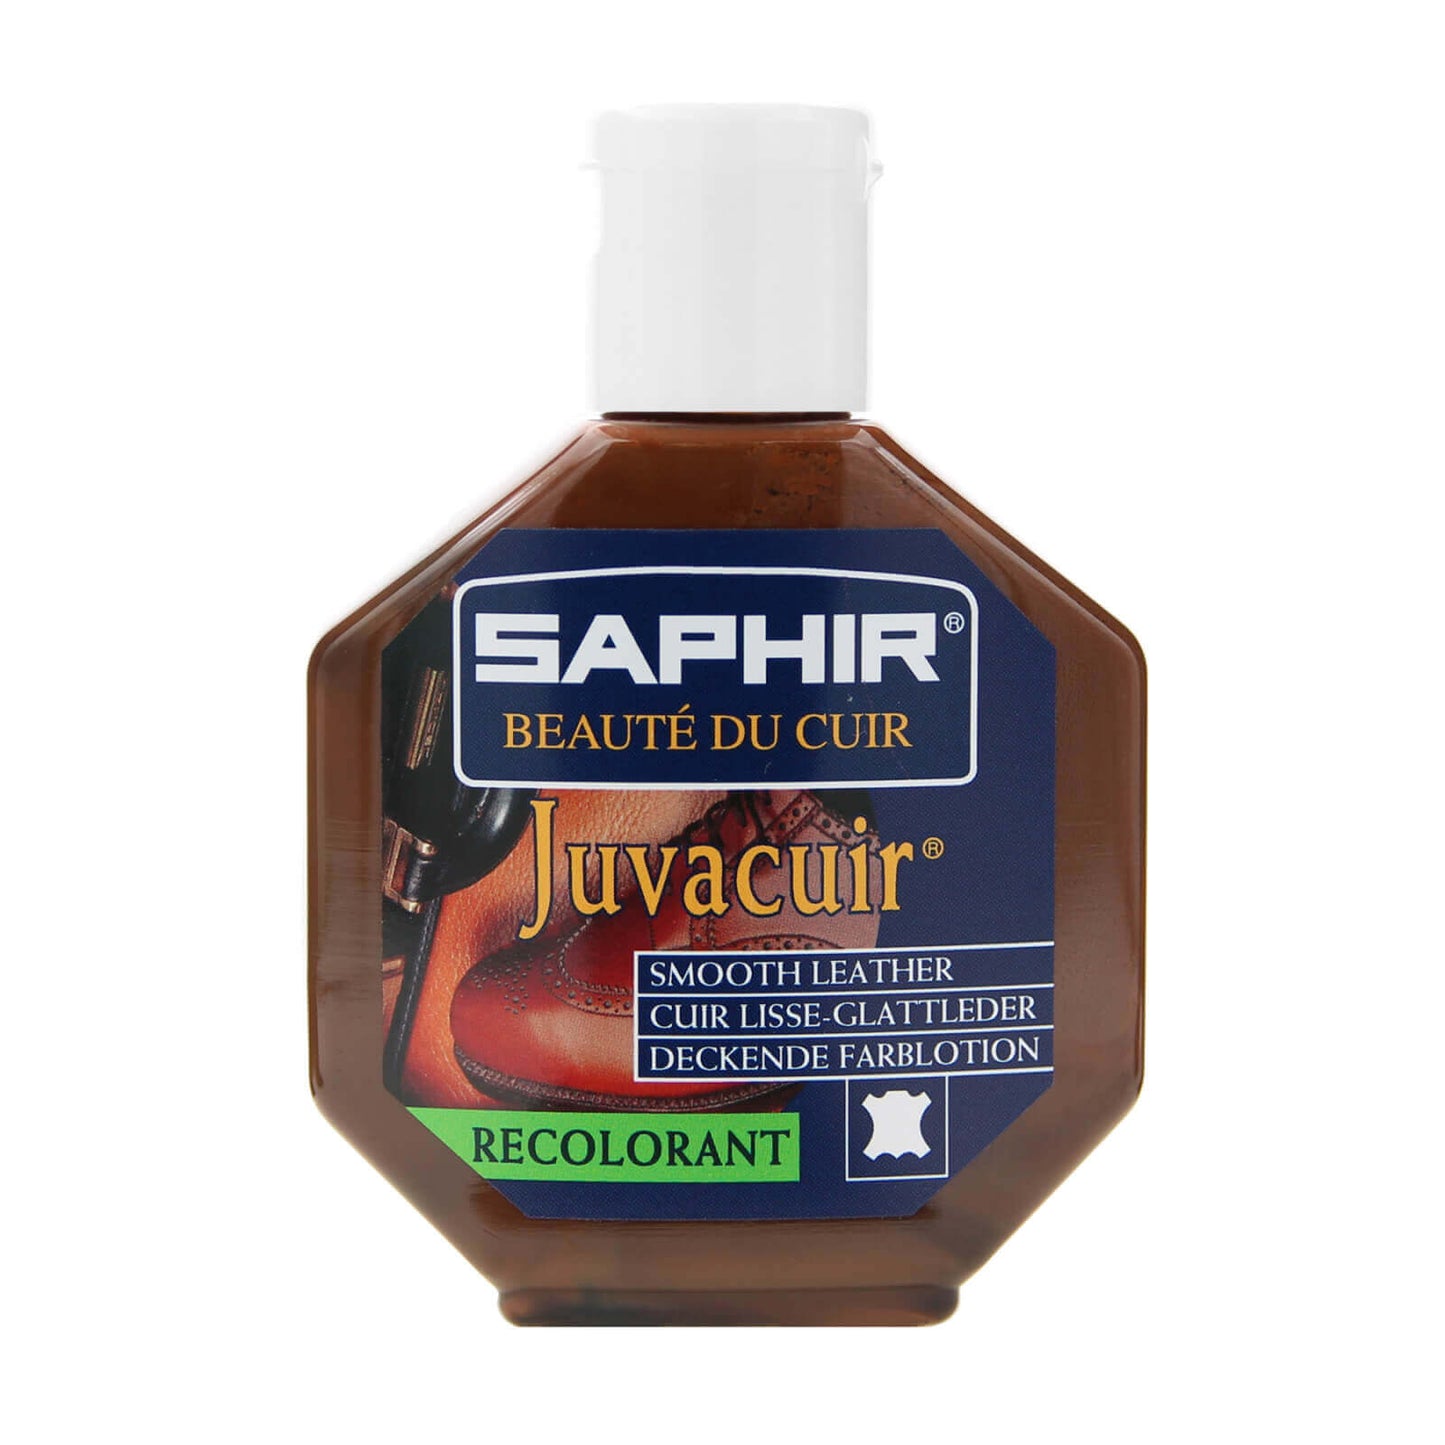 Crema Recolorante con Resina Reparadora Juvacuir Saphir BDC